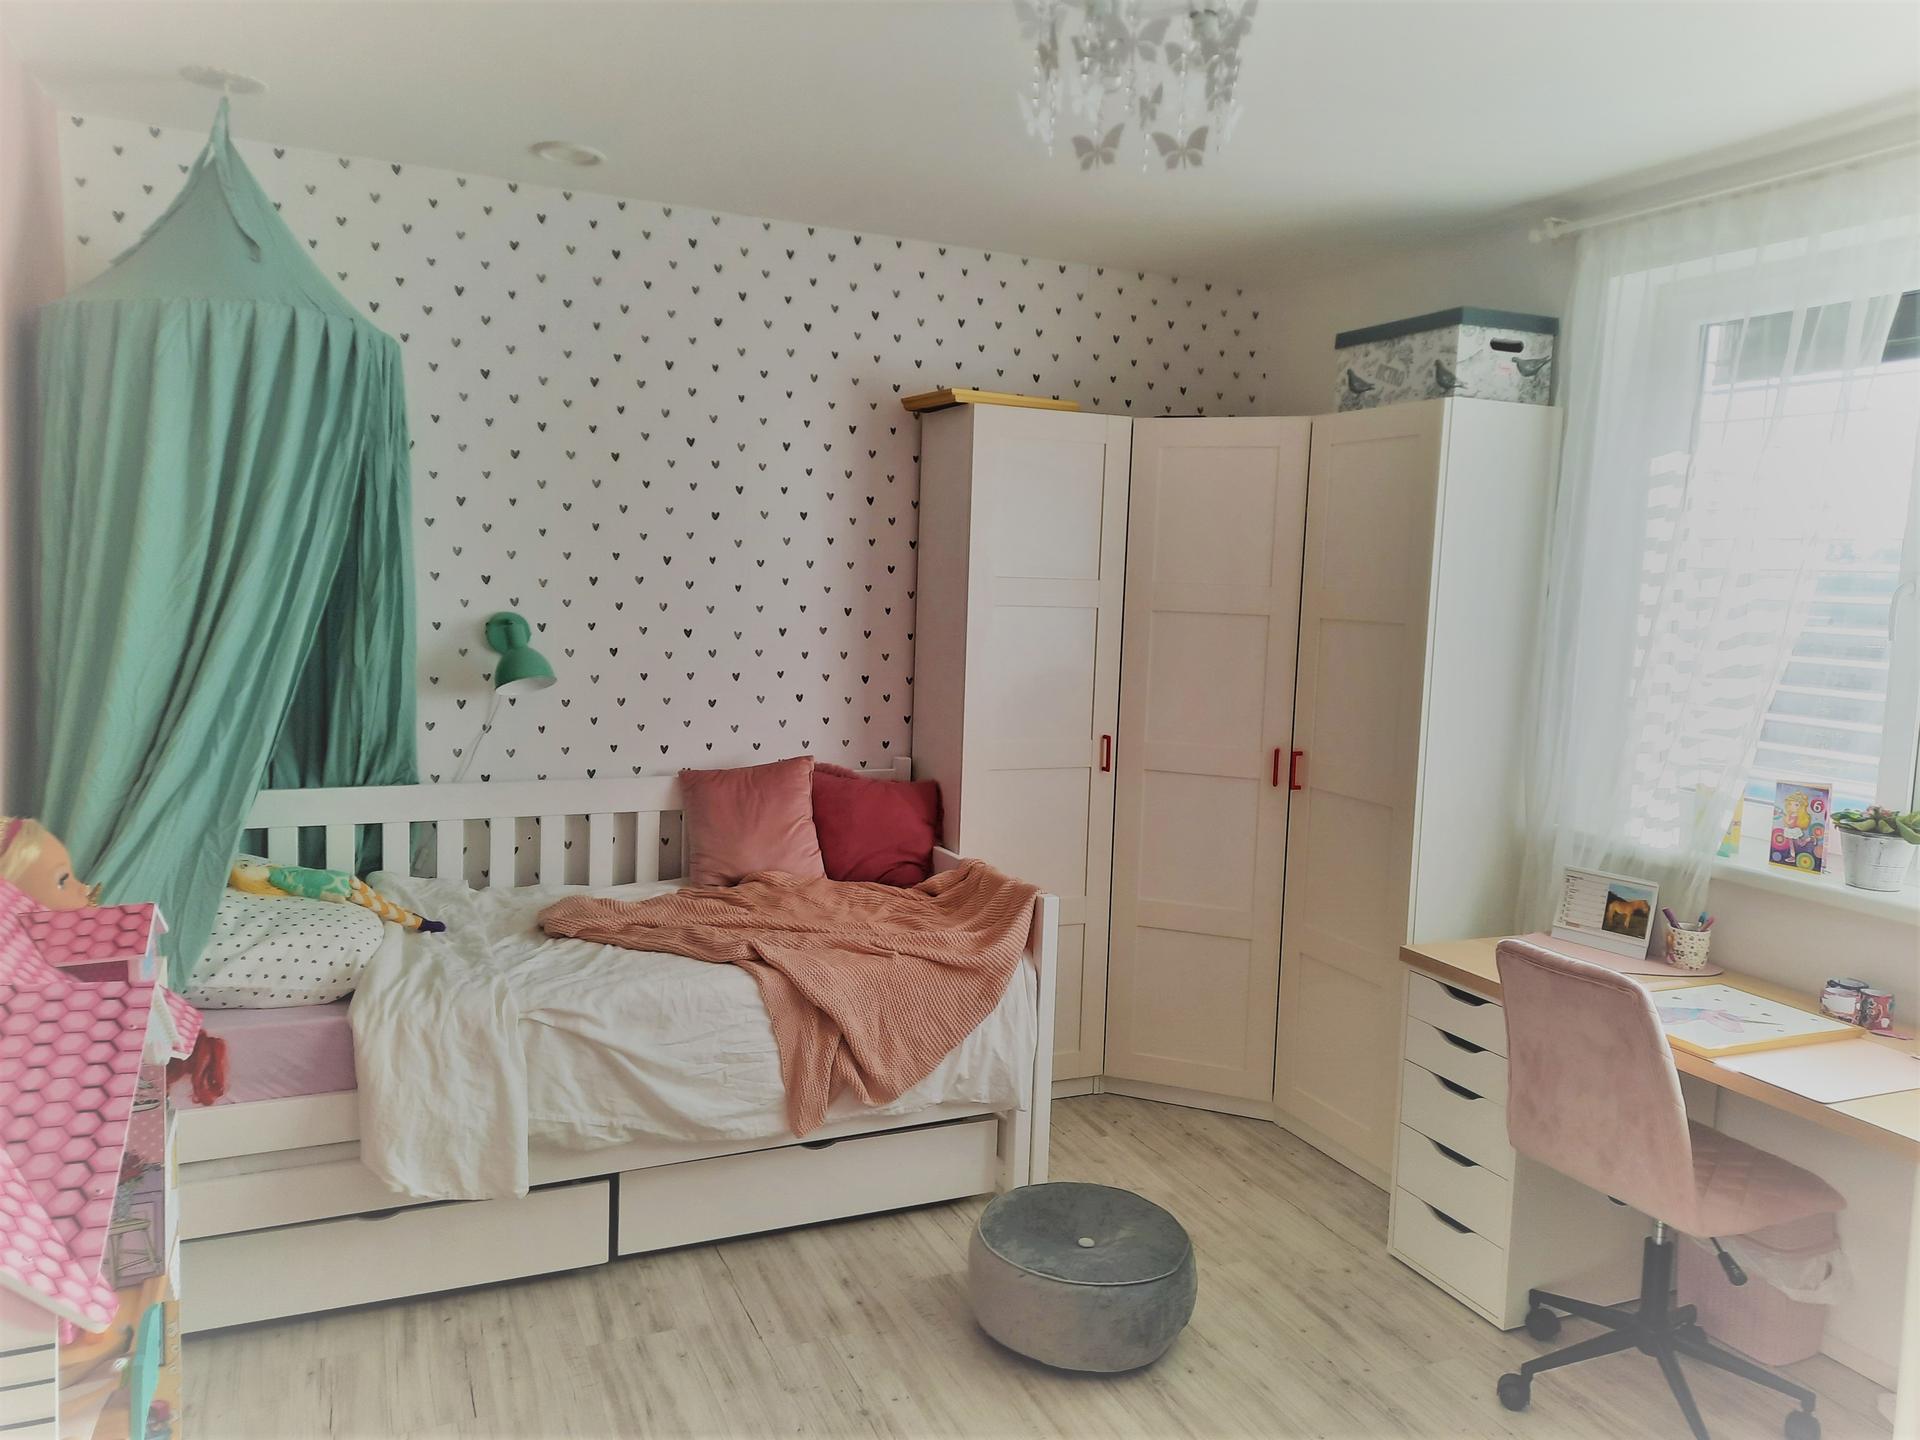 Nový pokojík pro nejmladší - školačku - A hotovo, finální podoba